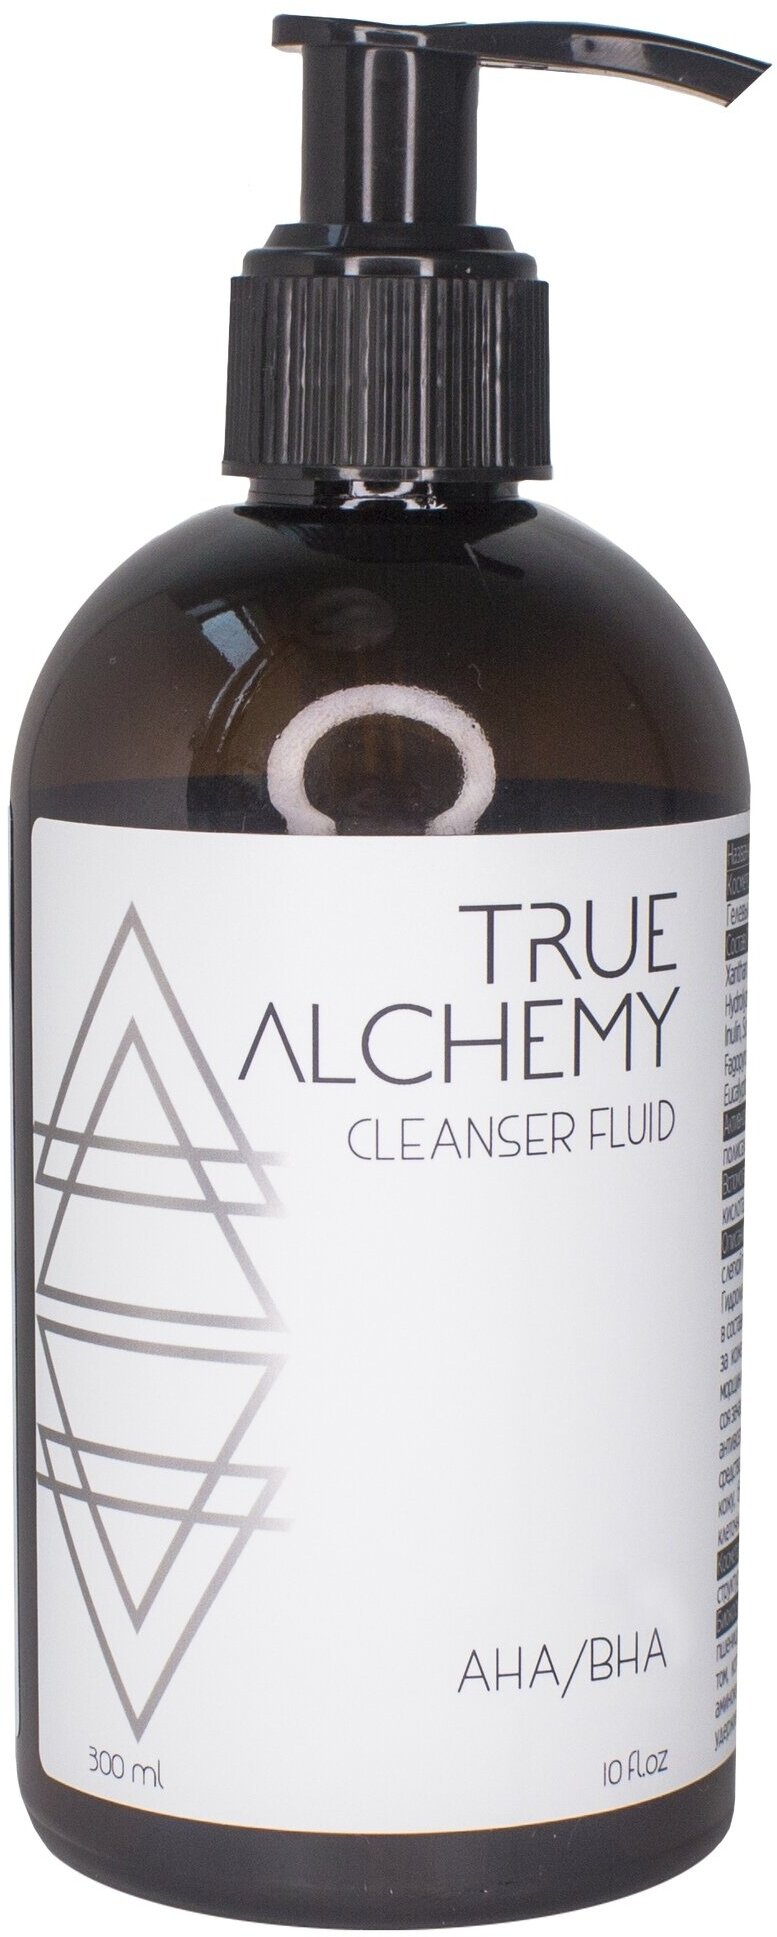 Флюид для умывания True Alchemy "Cleanser Fluid AHA/BHA", 300мл - фото №12